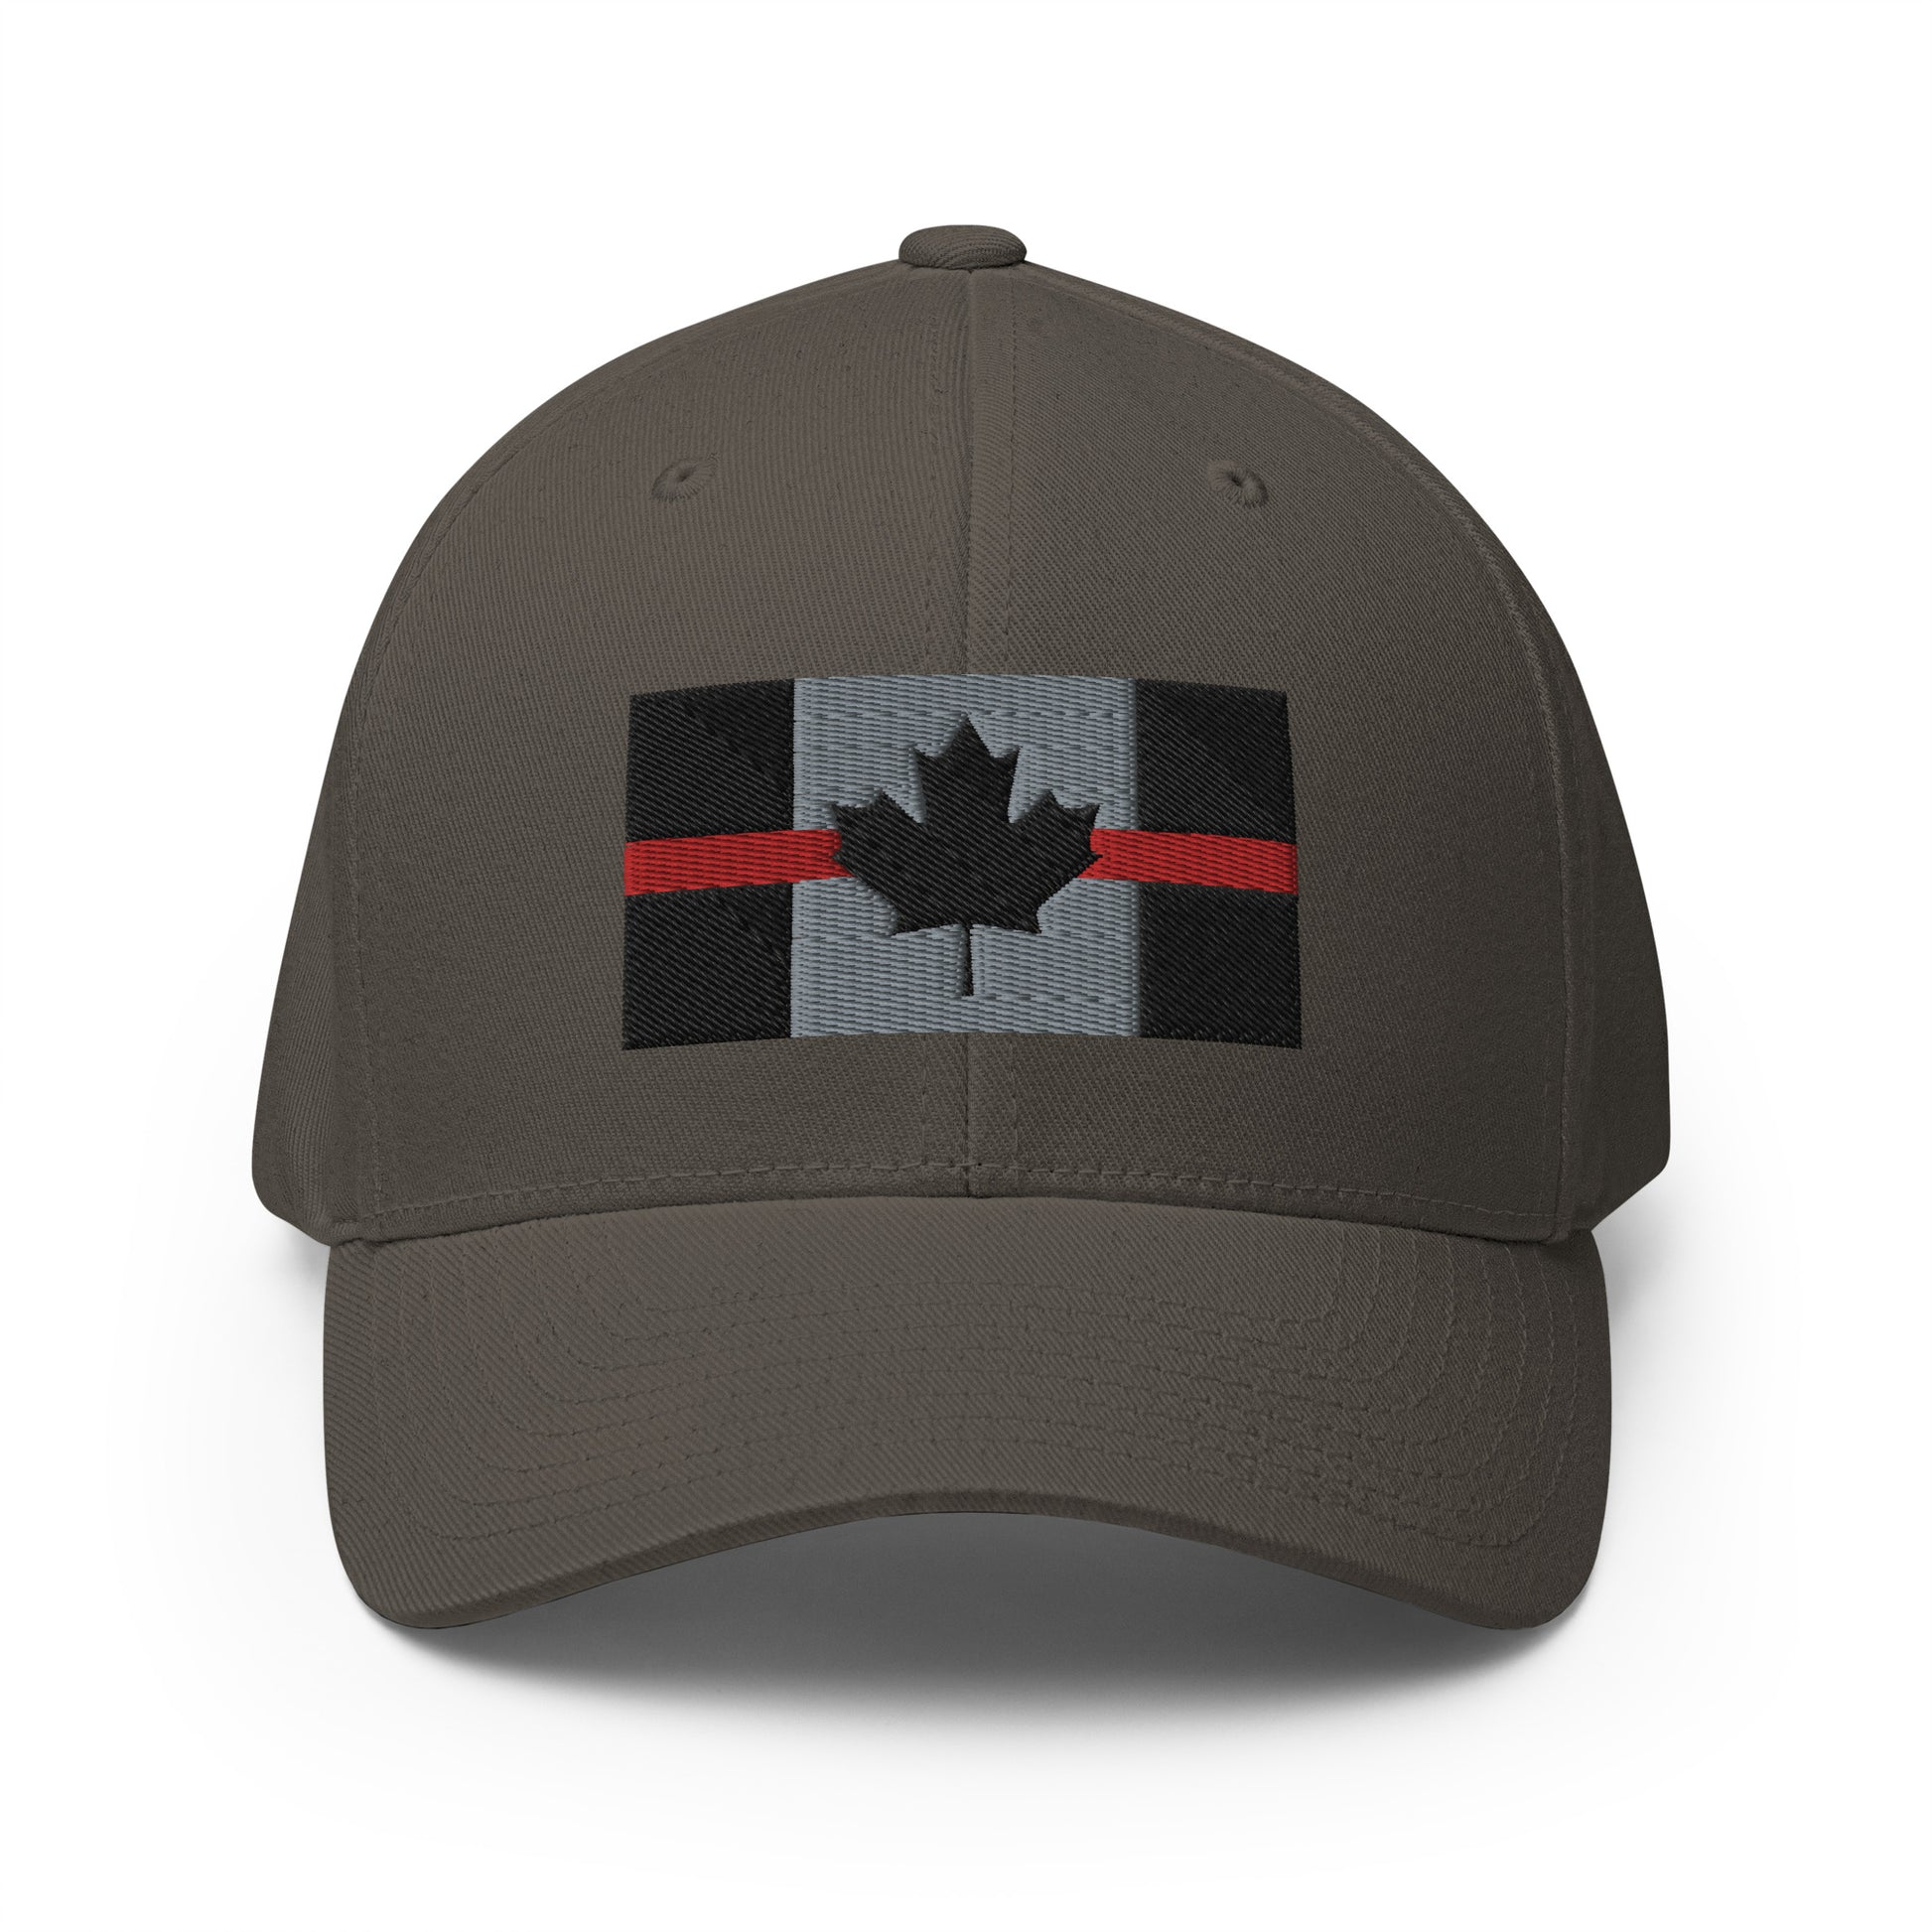 Thin Red Line Flexfit Hat-911 Duty Gear Canada-911 Duty Gear Canada